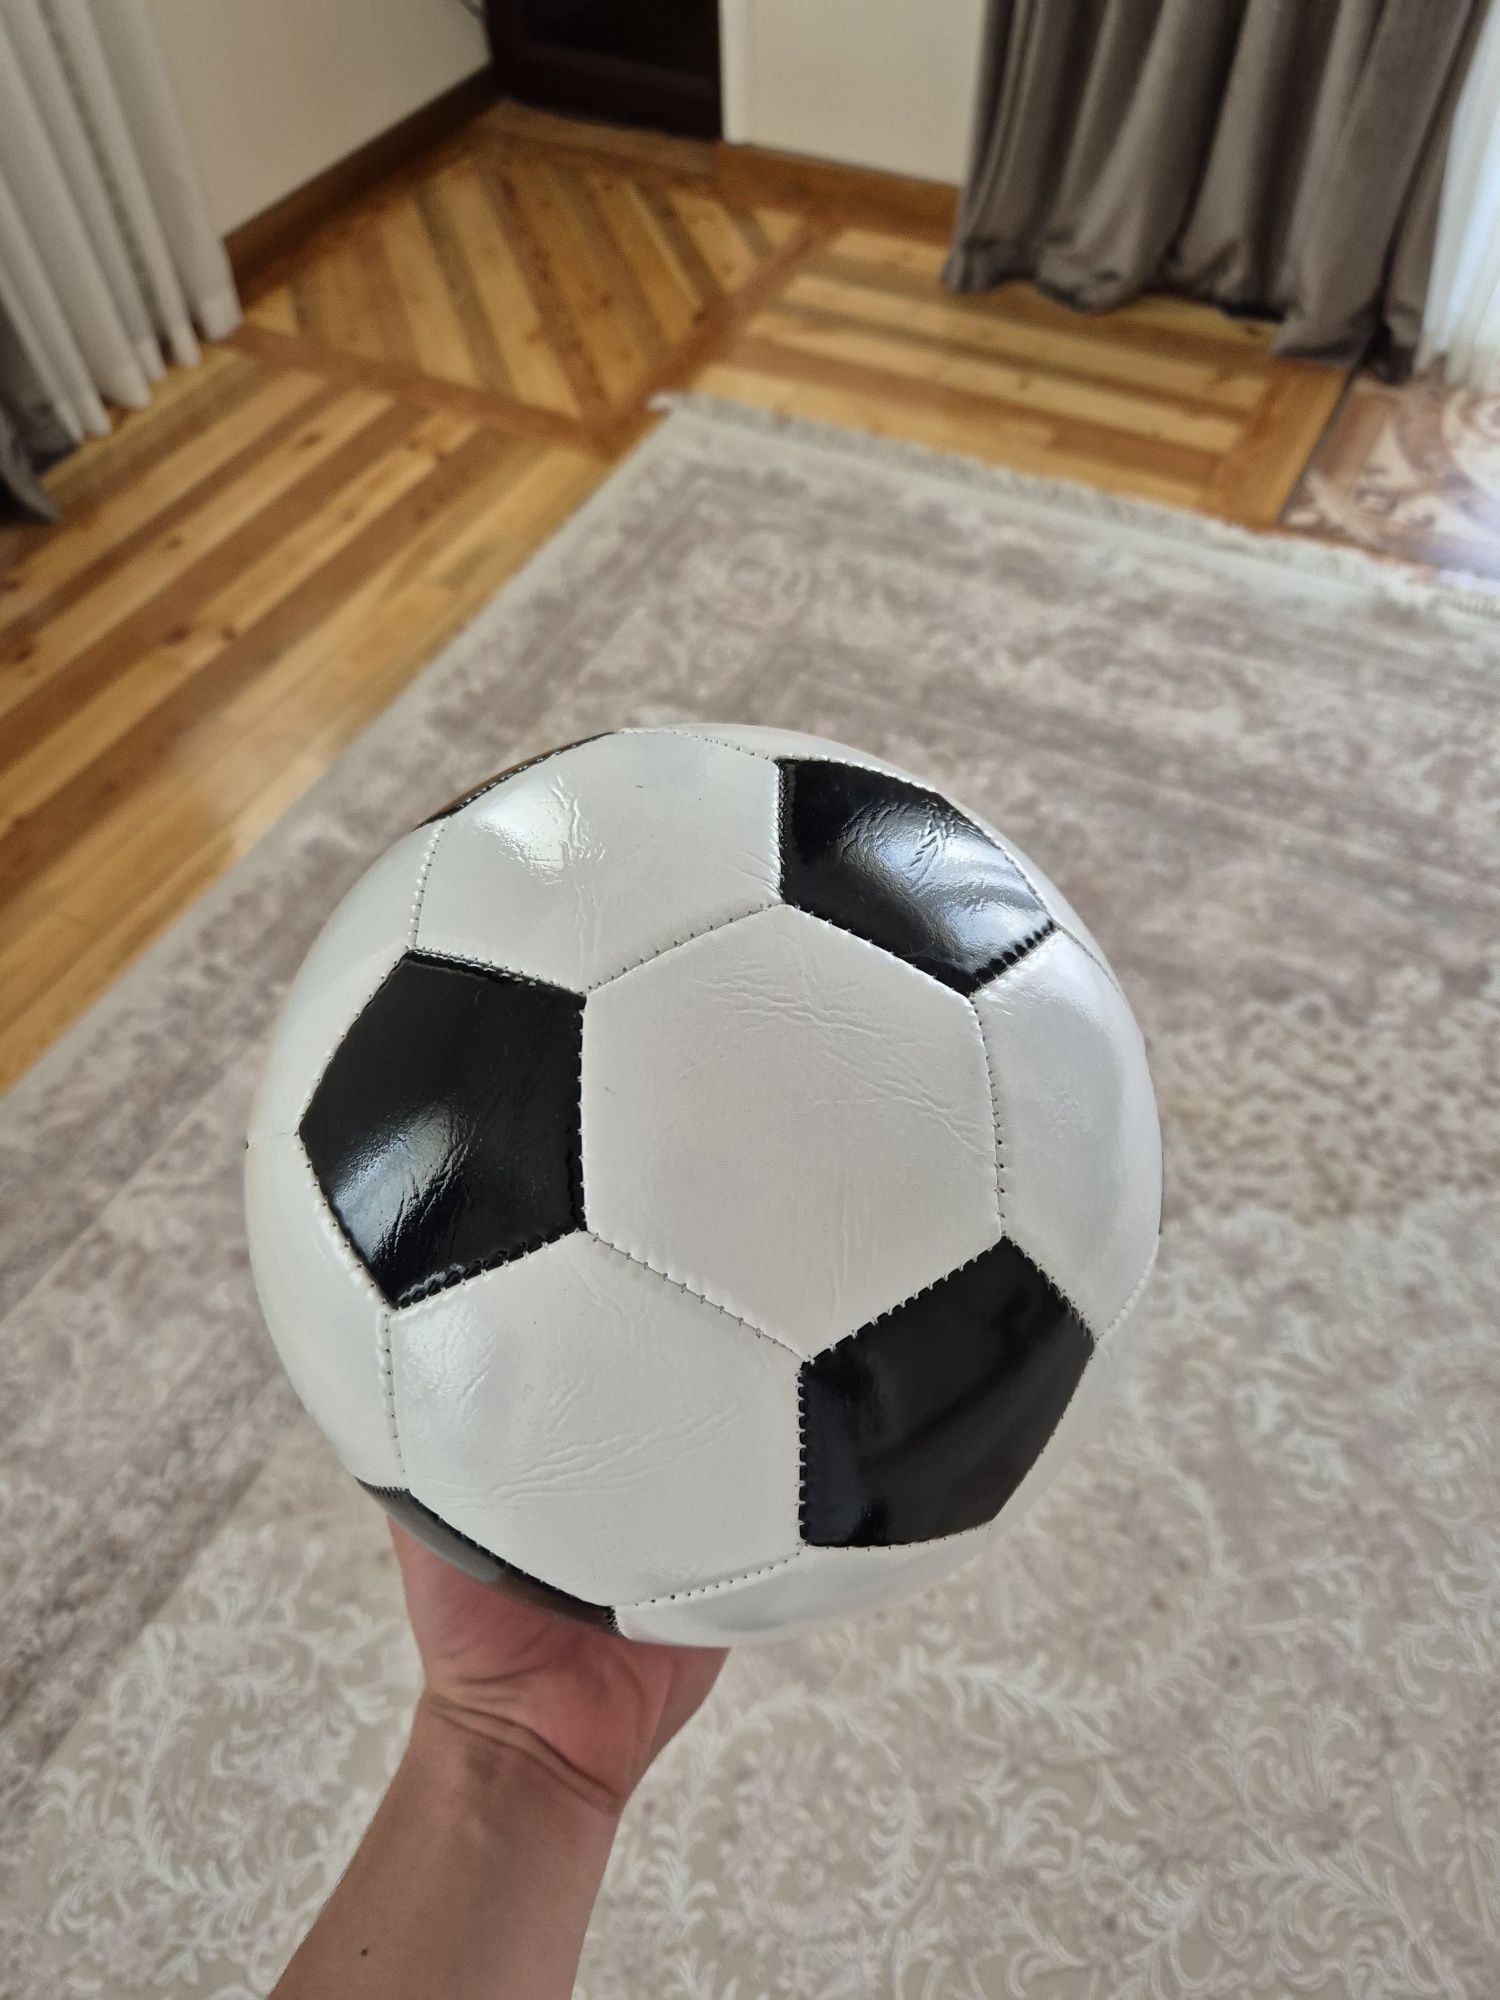 Футбольные мячи разные цвета